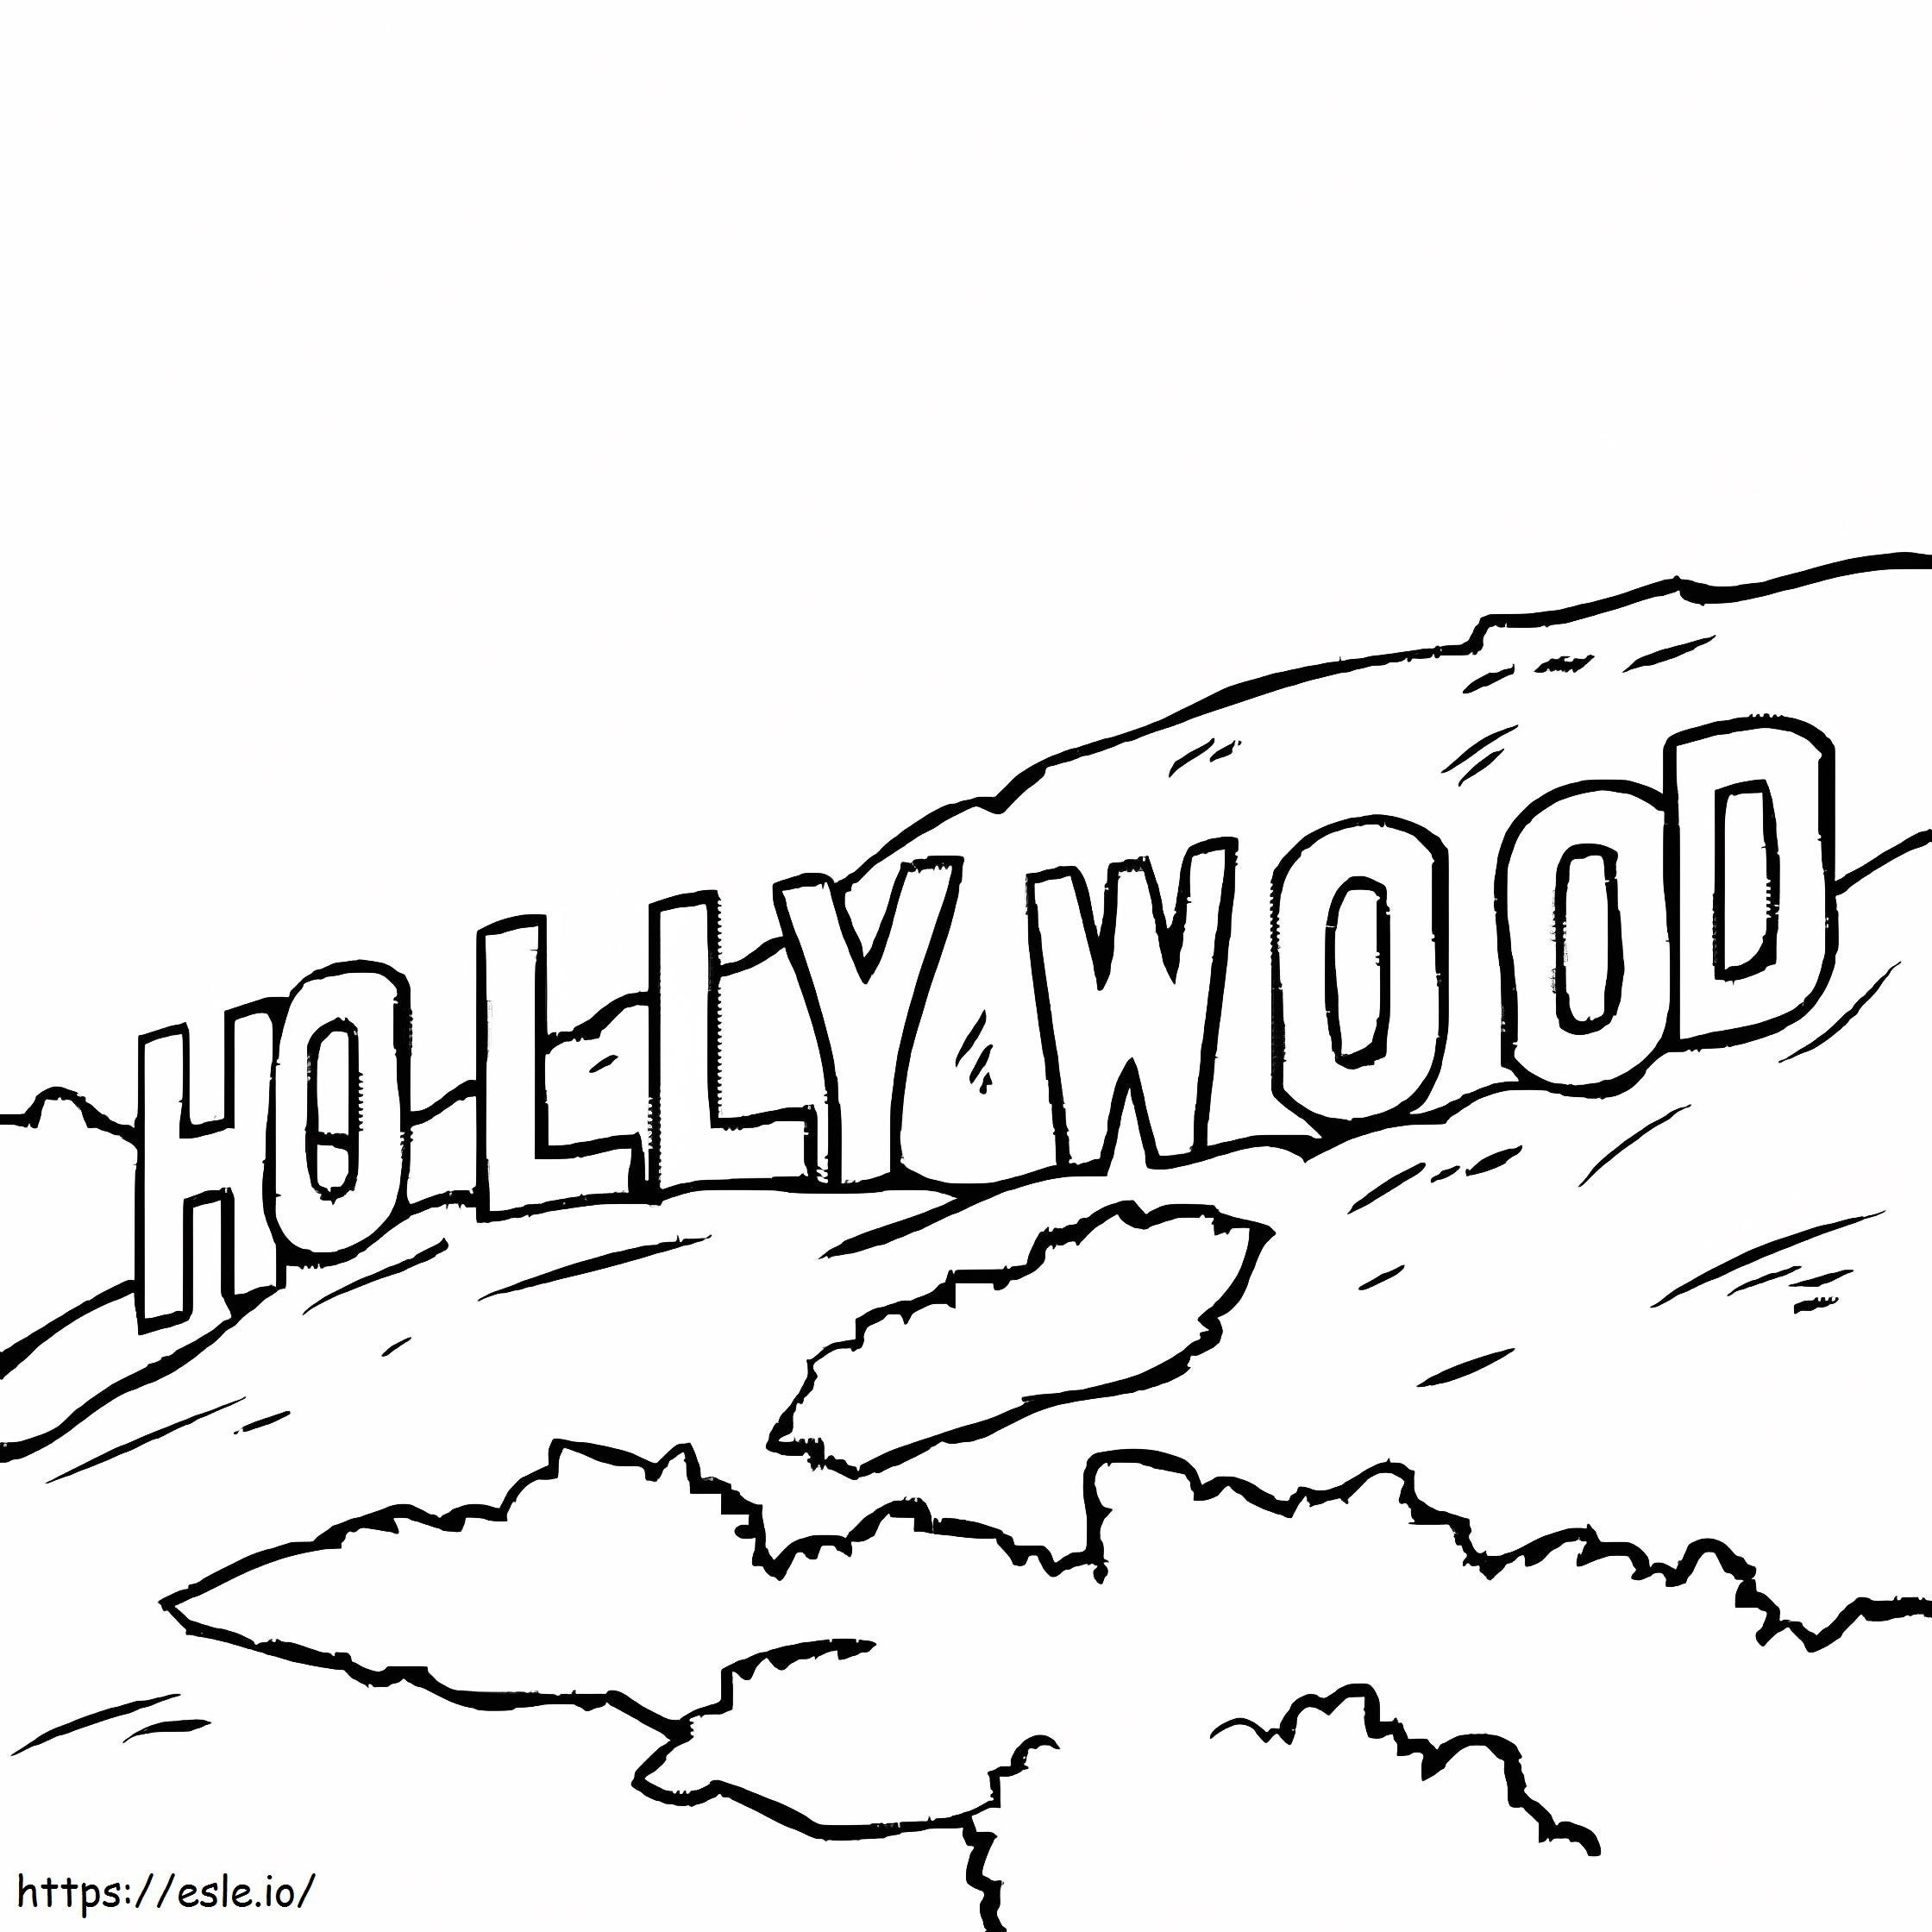 Drucken Sie Hollywood ausmalbilder